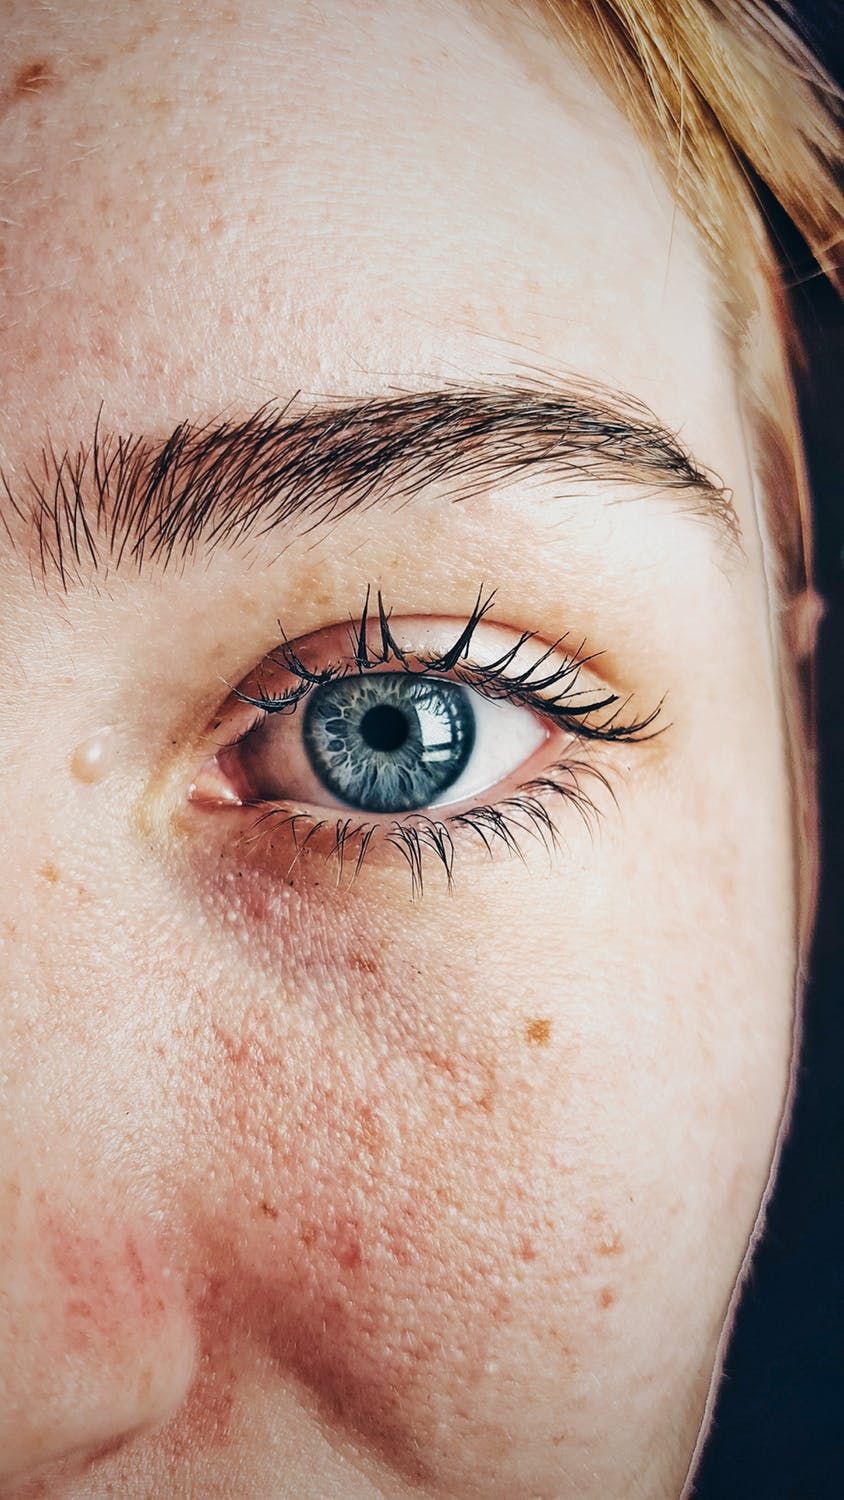 Czy warto zastosować u siebie laserową korekcję wzroku?